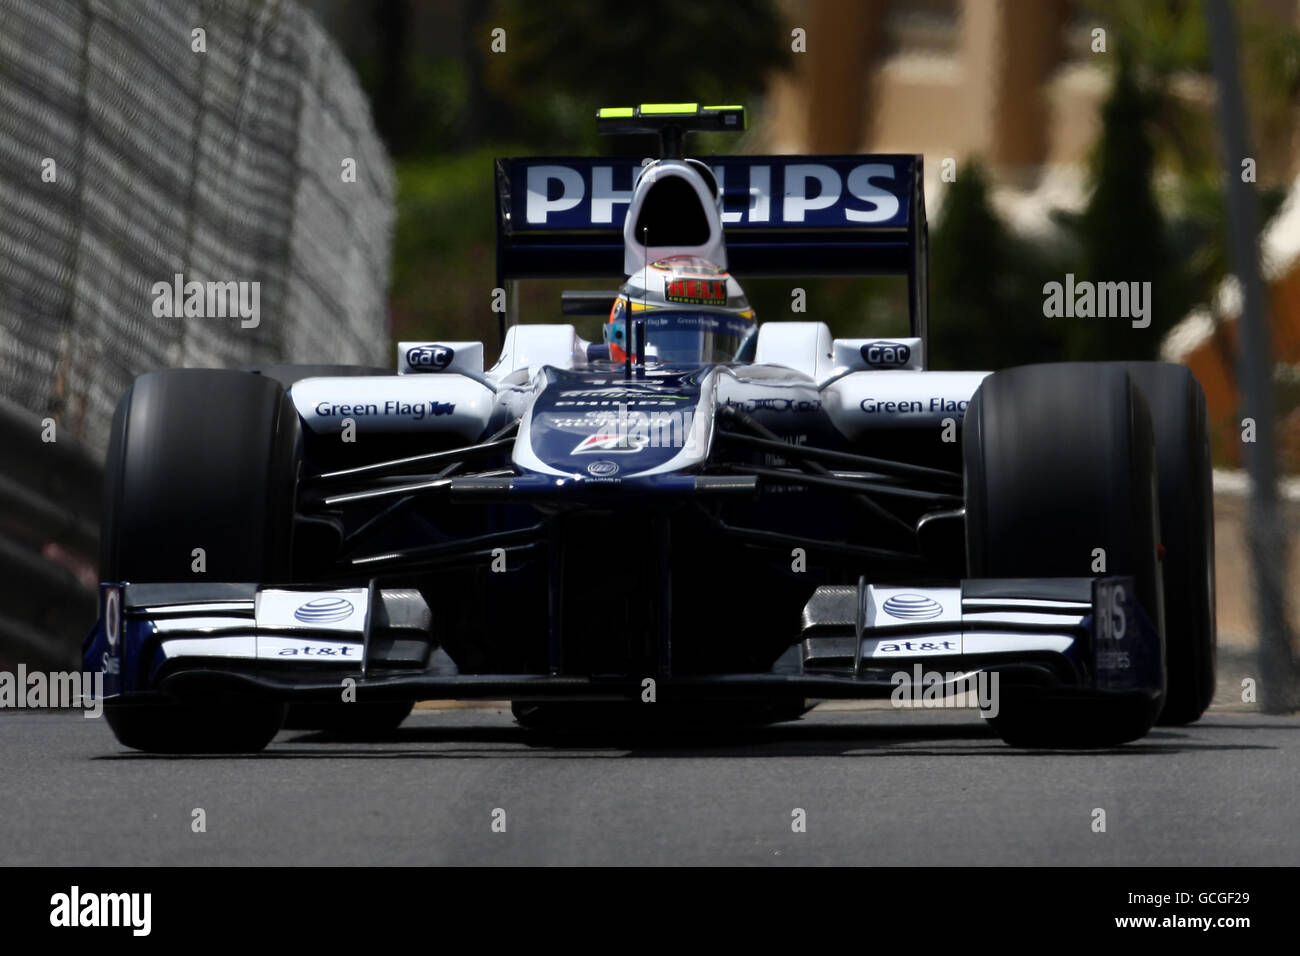 Carreras de Fórmula Uno - Gran Premio de Mónaco - Día de Práctica - Circuito de Mónaco. Williams' Nico Hulkenberg durante la práctica en el Circuit de Monaco, Monte Carlo. Foto de stock